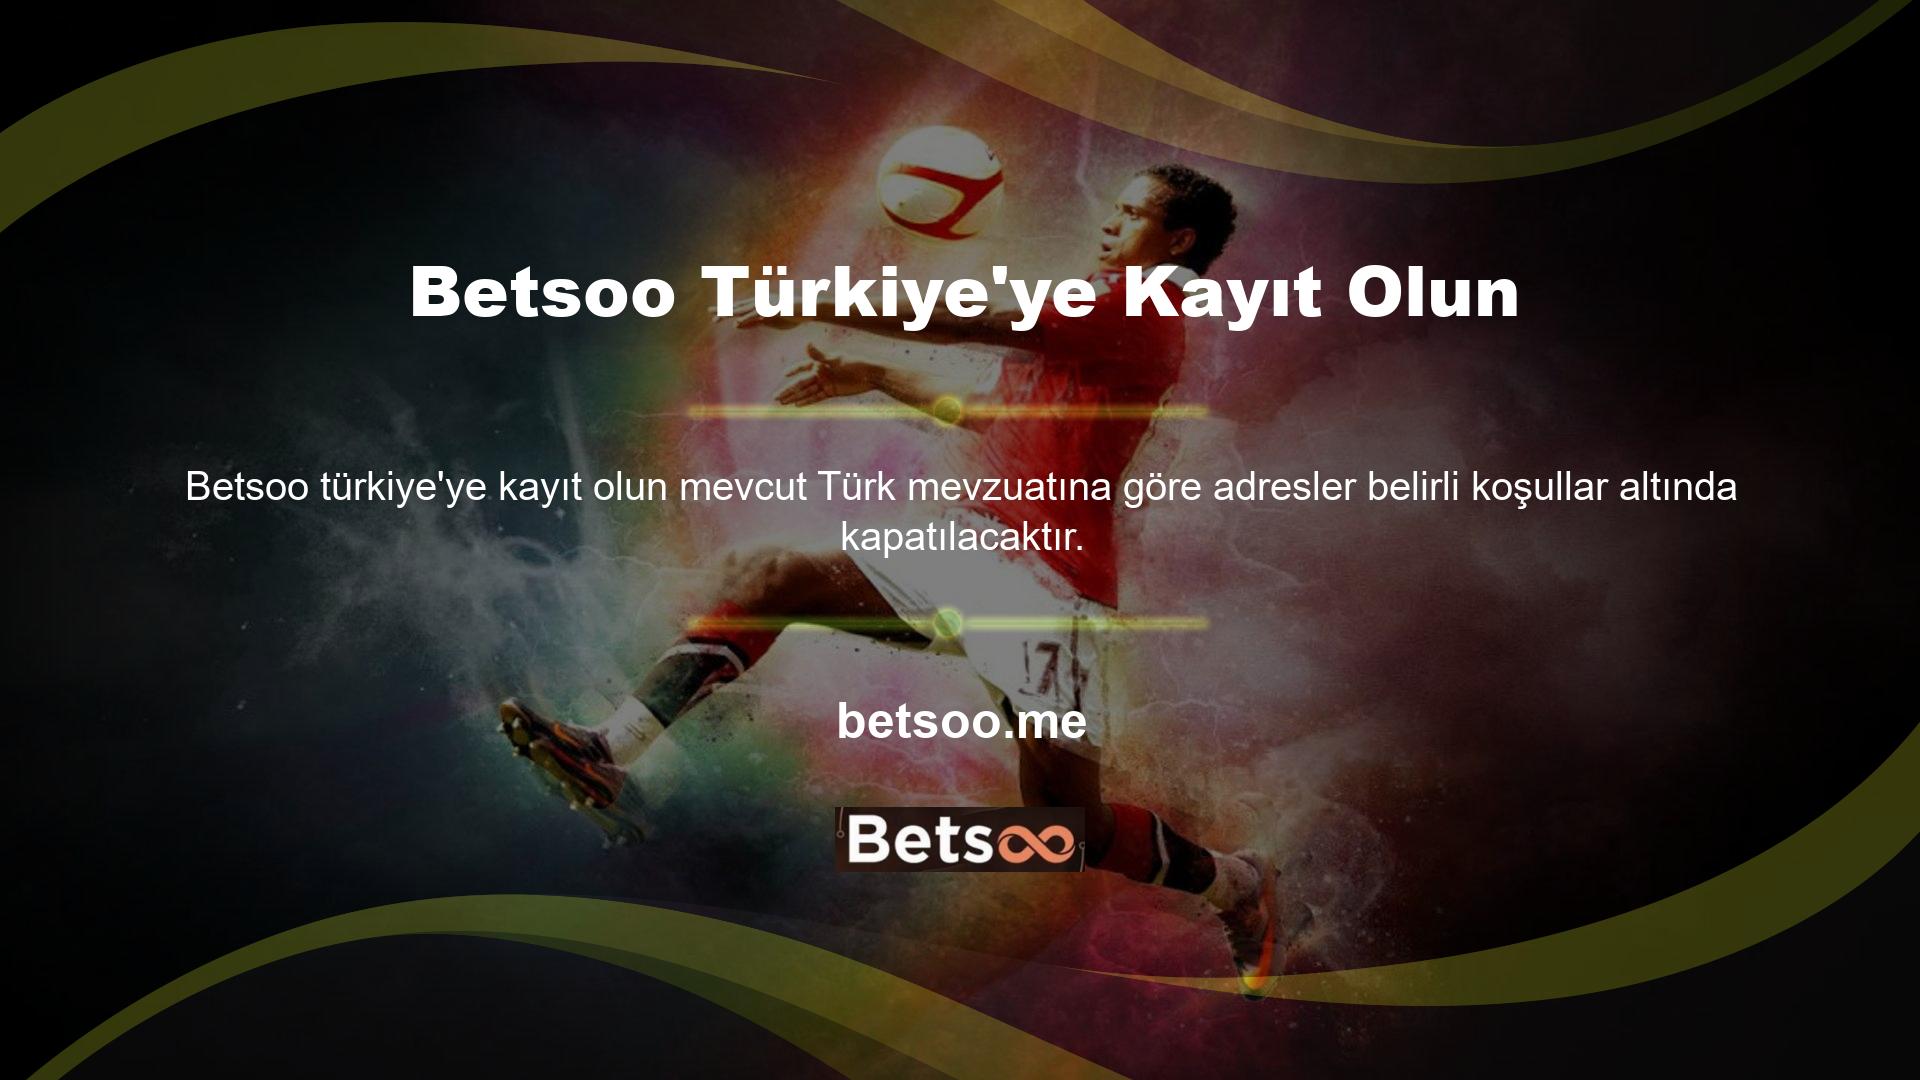 Bu bağlamda Betsoo Türkiye'ye kayıt için adres değişikliği gerekmekteydi